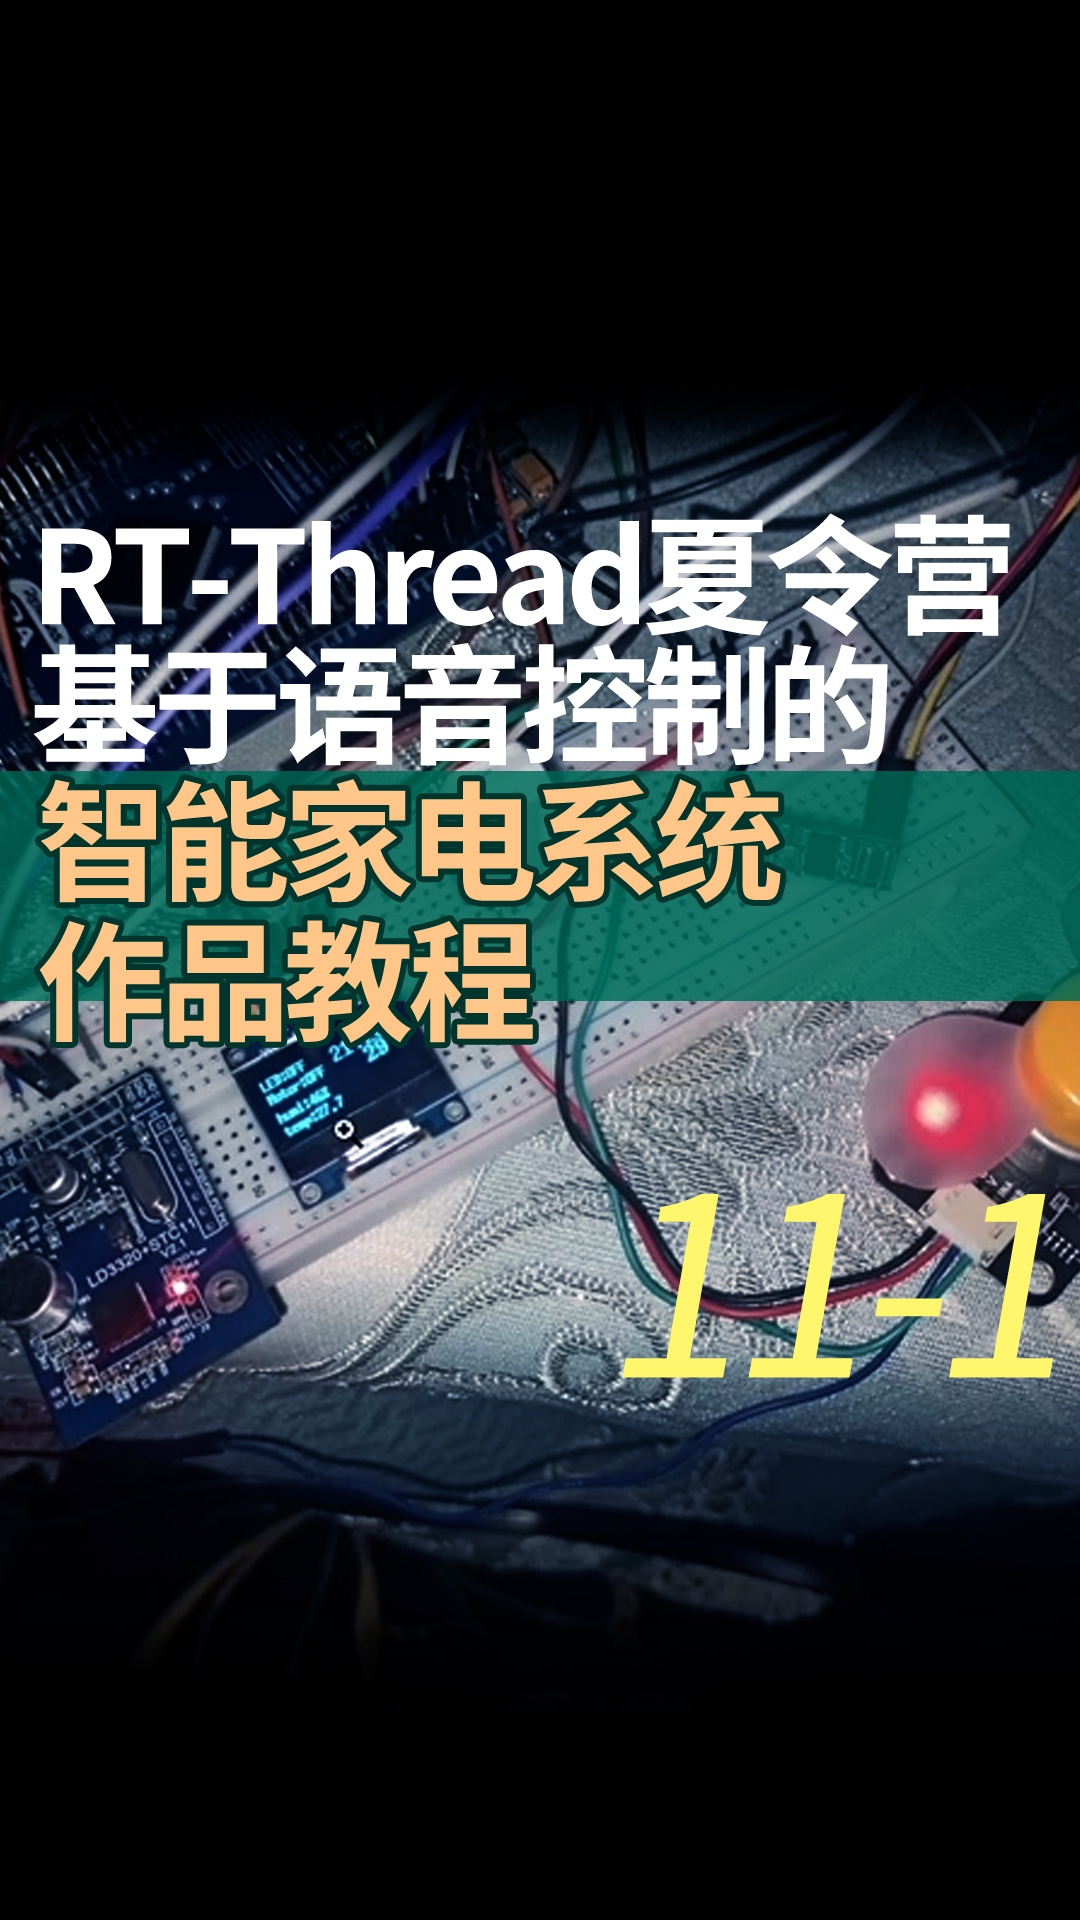 RT-Thread夏令营基于语音控制的智能家电系统作品教程11-1pwm设备的使用